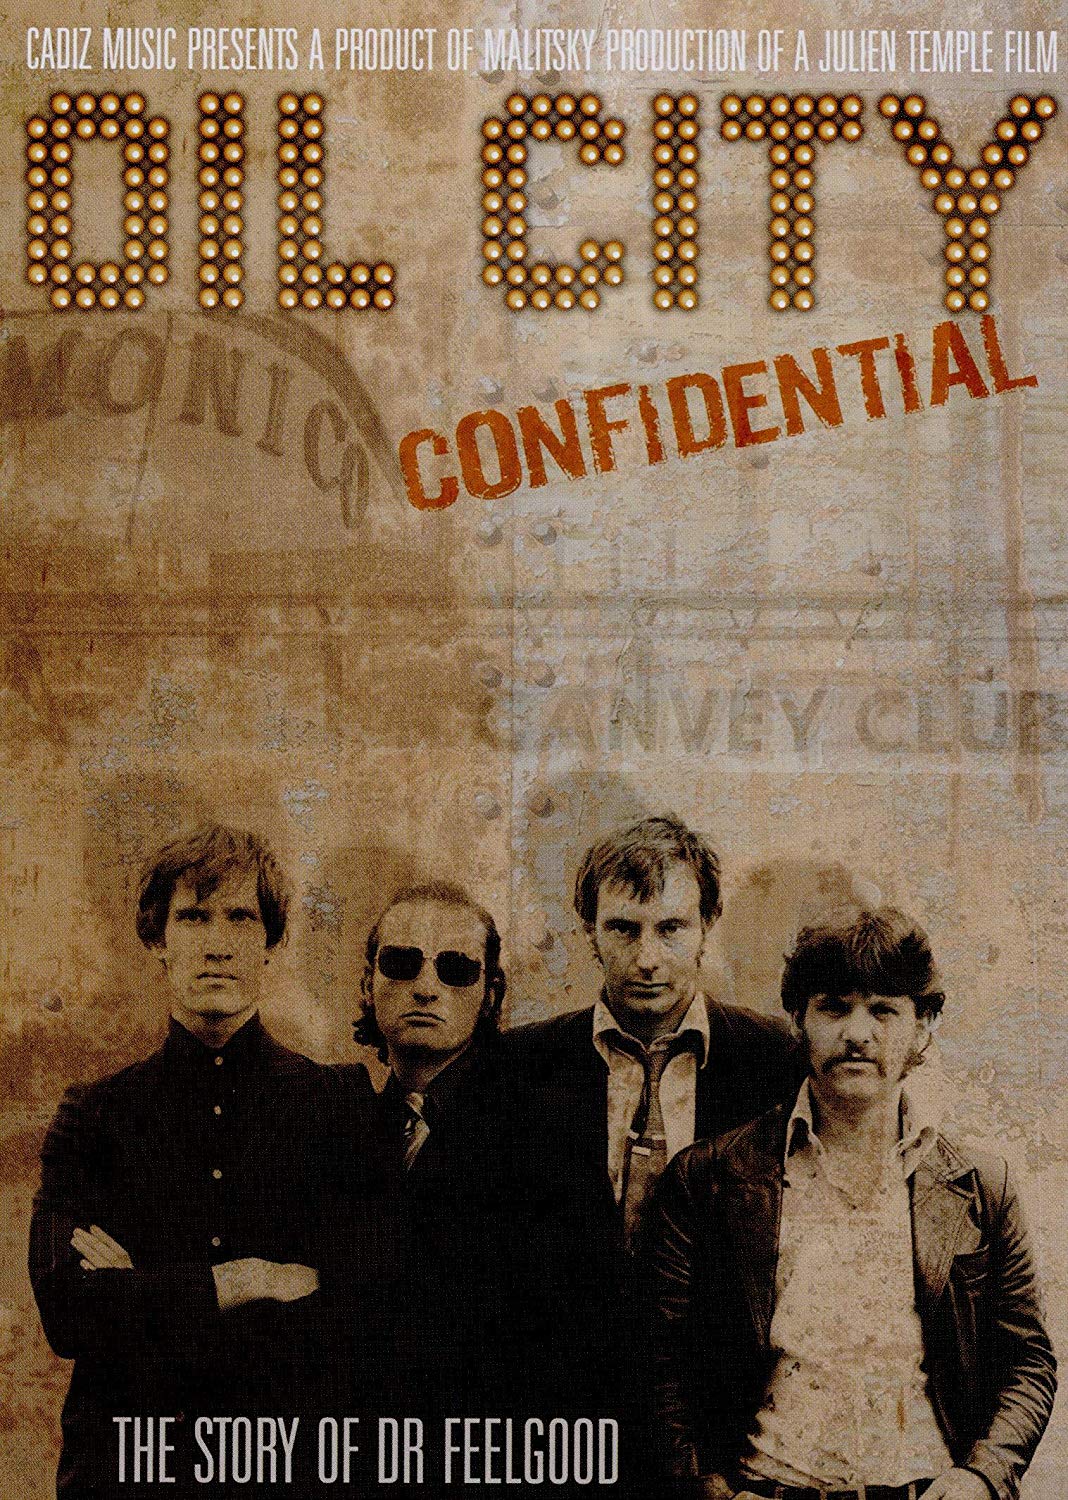 Music Dvd Dr. Feelgood - Oil City Confidential: 10th Anniversary Deluxe Tin Special Edition with Bonus Dvd (2 Dvd) NUOVO SIGILLATO, EDIZIONE DEL 26/07/2019 SUBITO DISPONIBILE